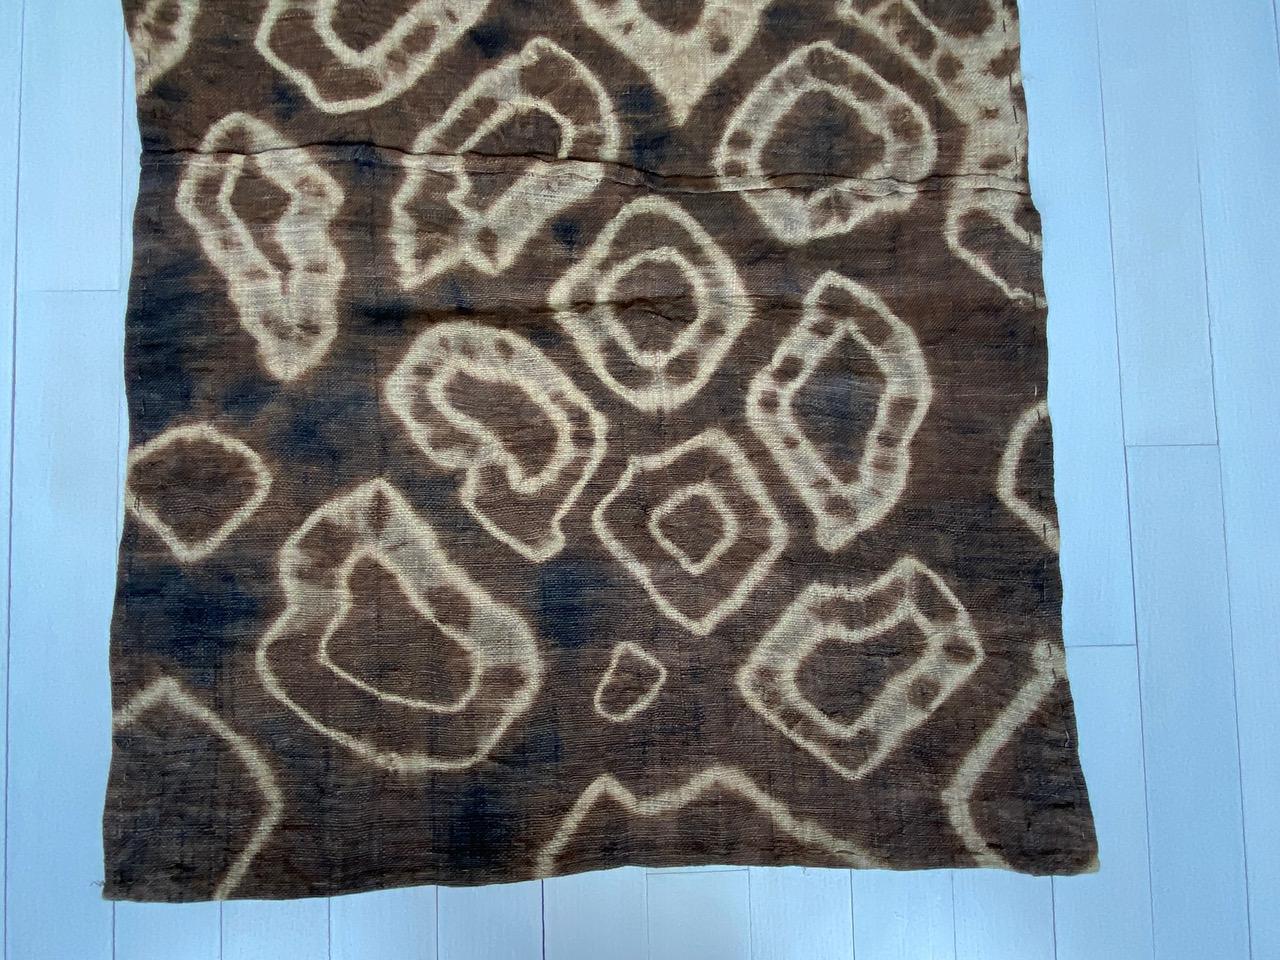 Cotton Andrianna Shamaris Antique African Raffia Textile